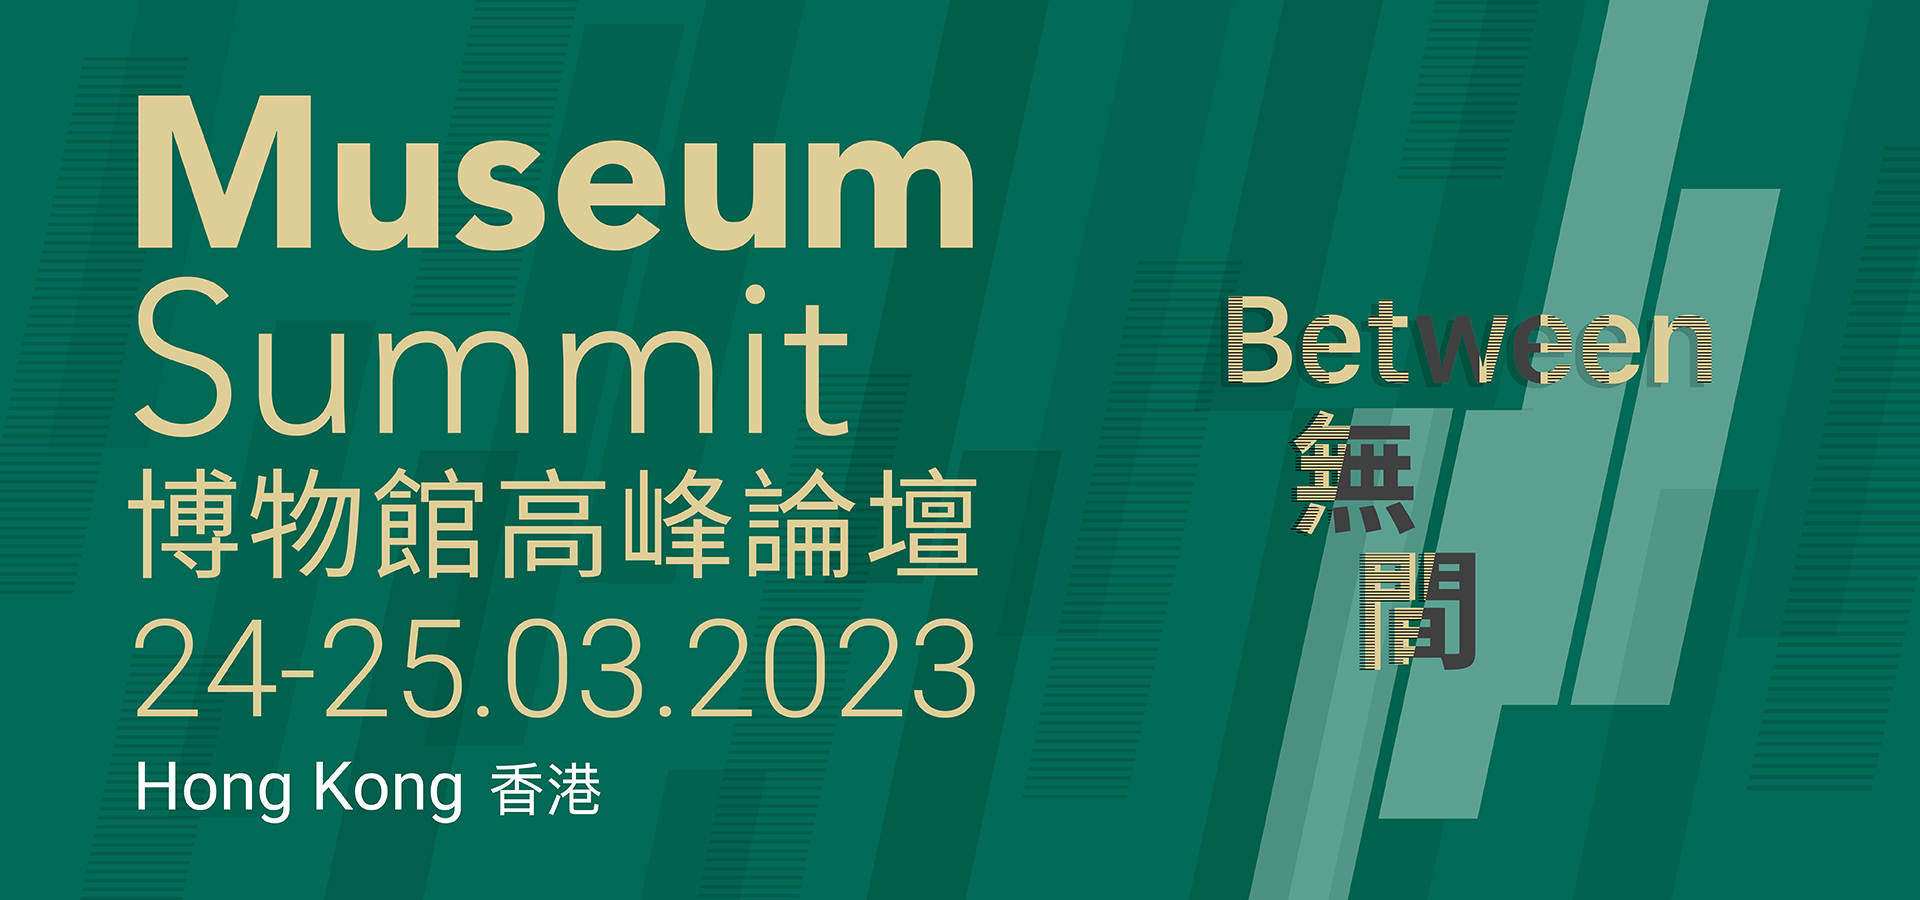 Museum Summit 2023